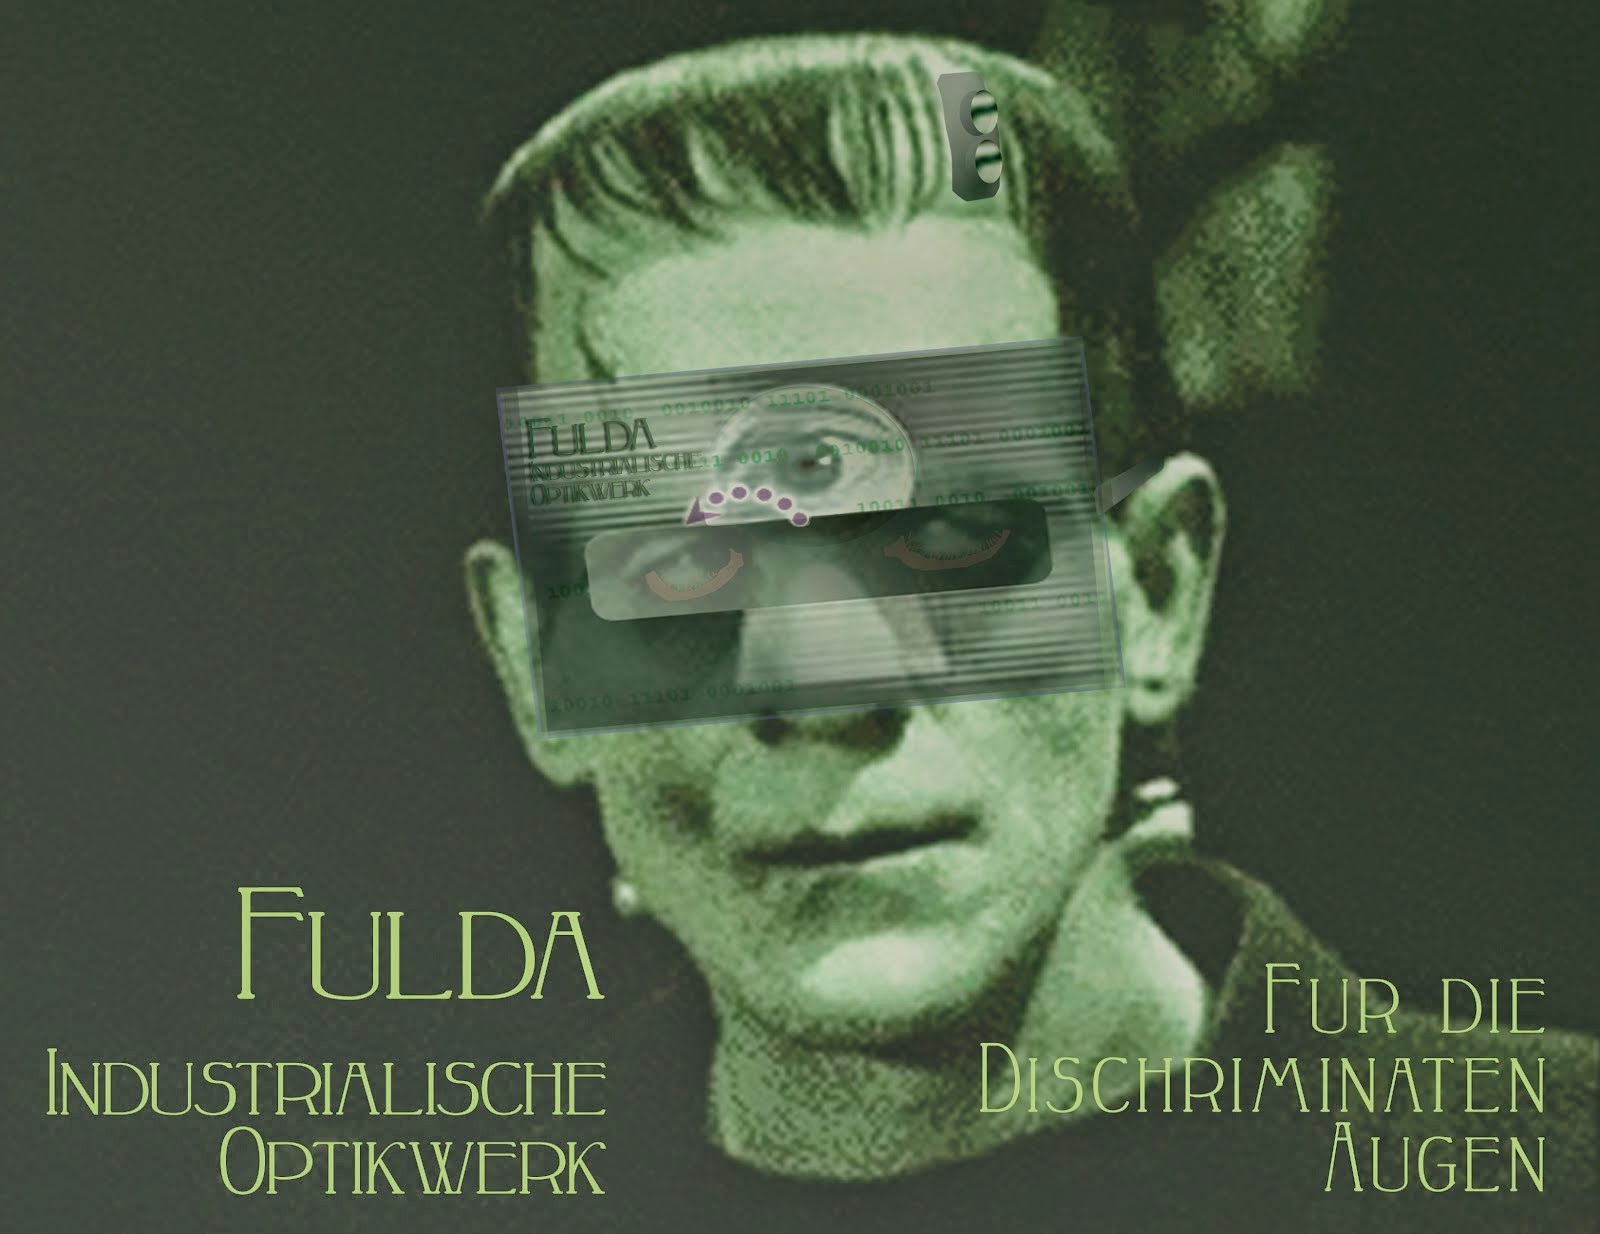 Fulda Industrial Opticworks